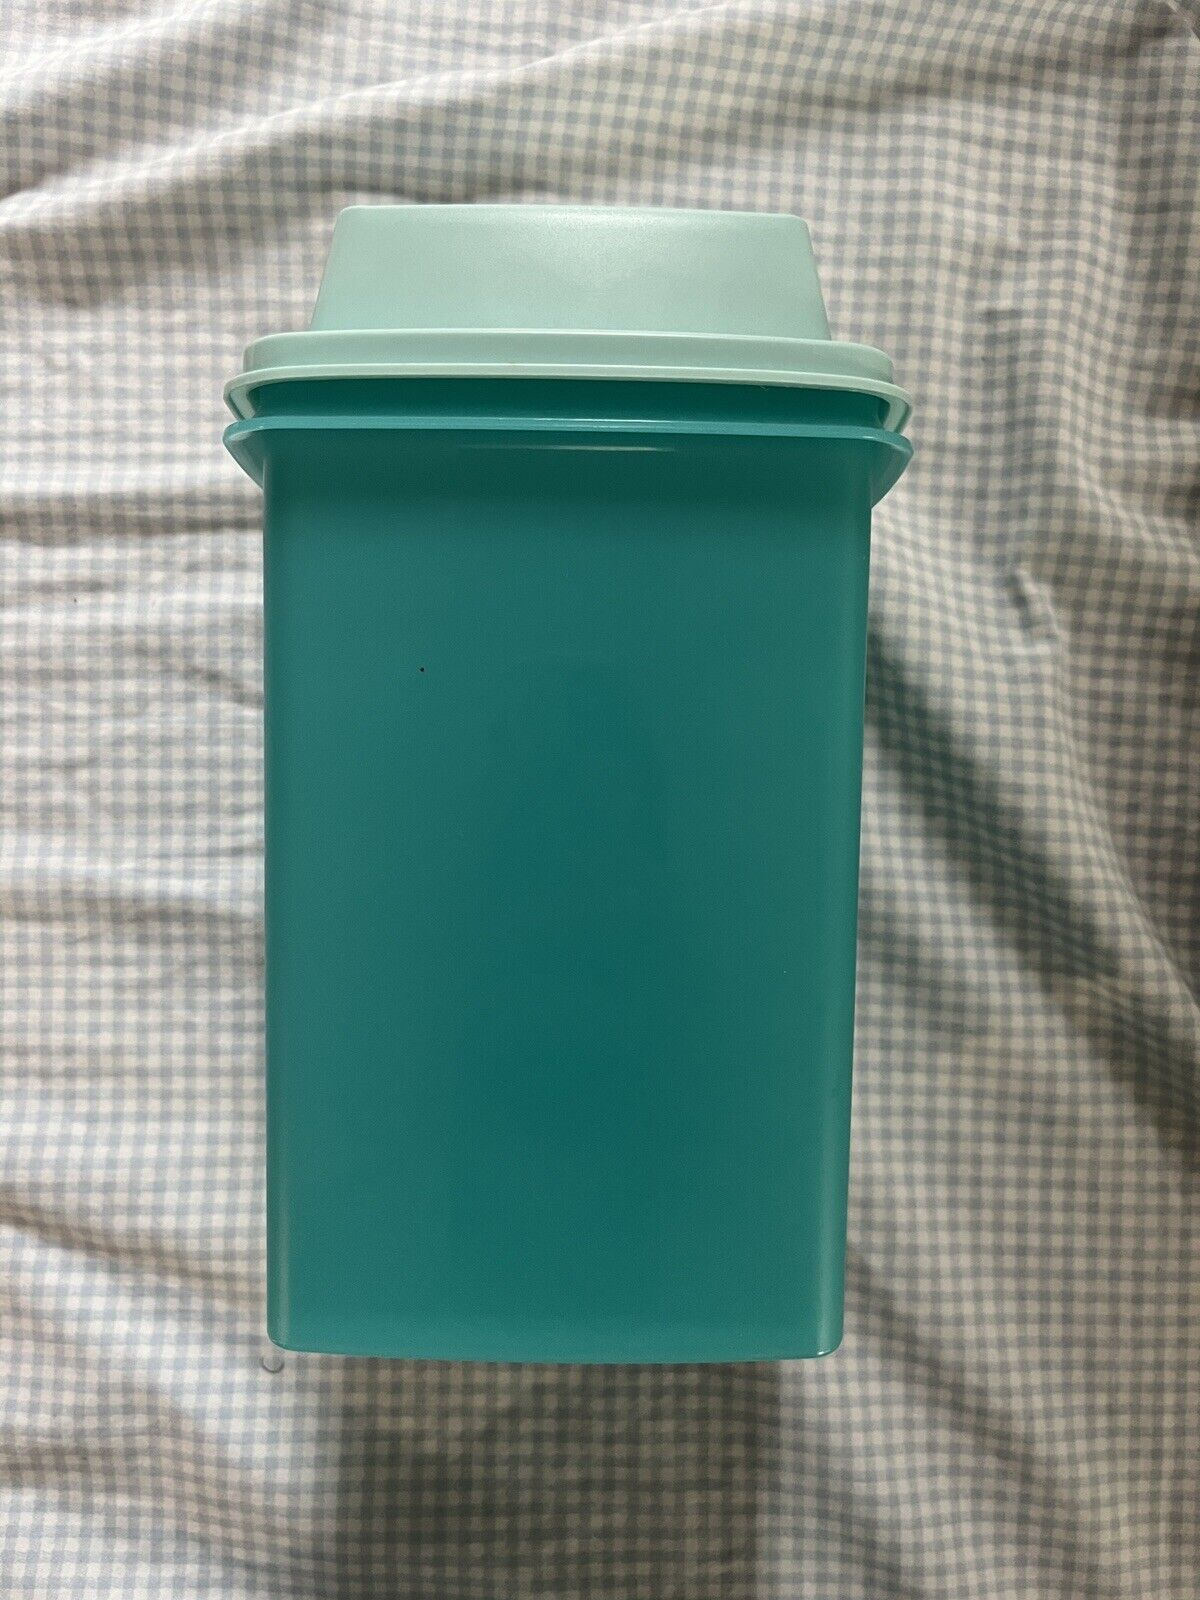 Tupperware Pick-A-Deli Pickle Keeper Container Set Aqua Blue 3 Pcs EUC